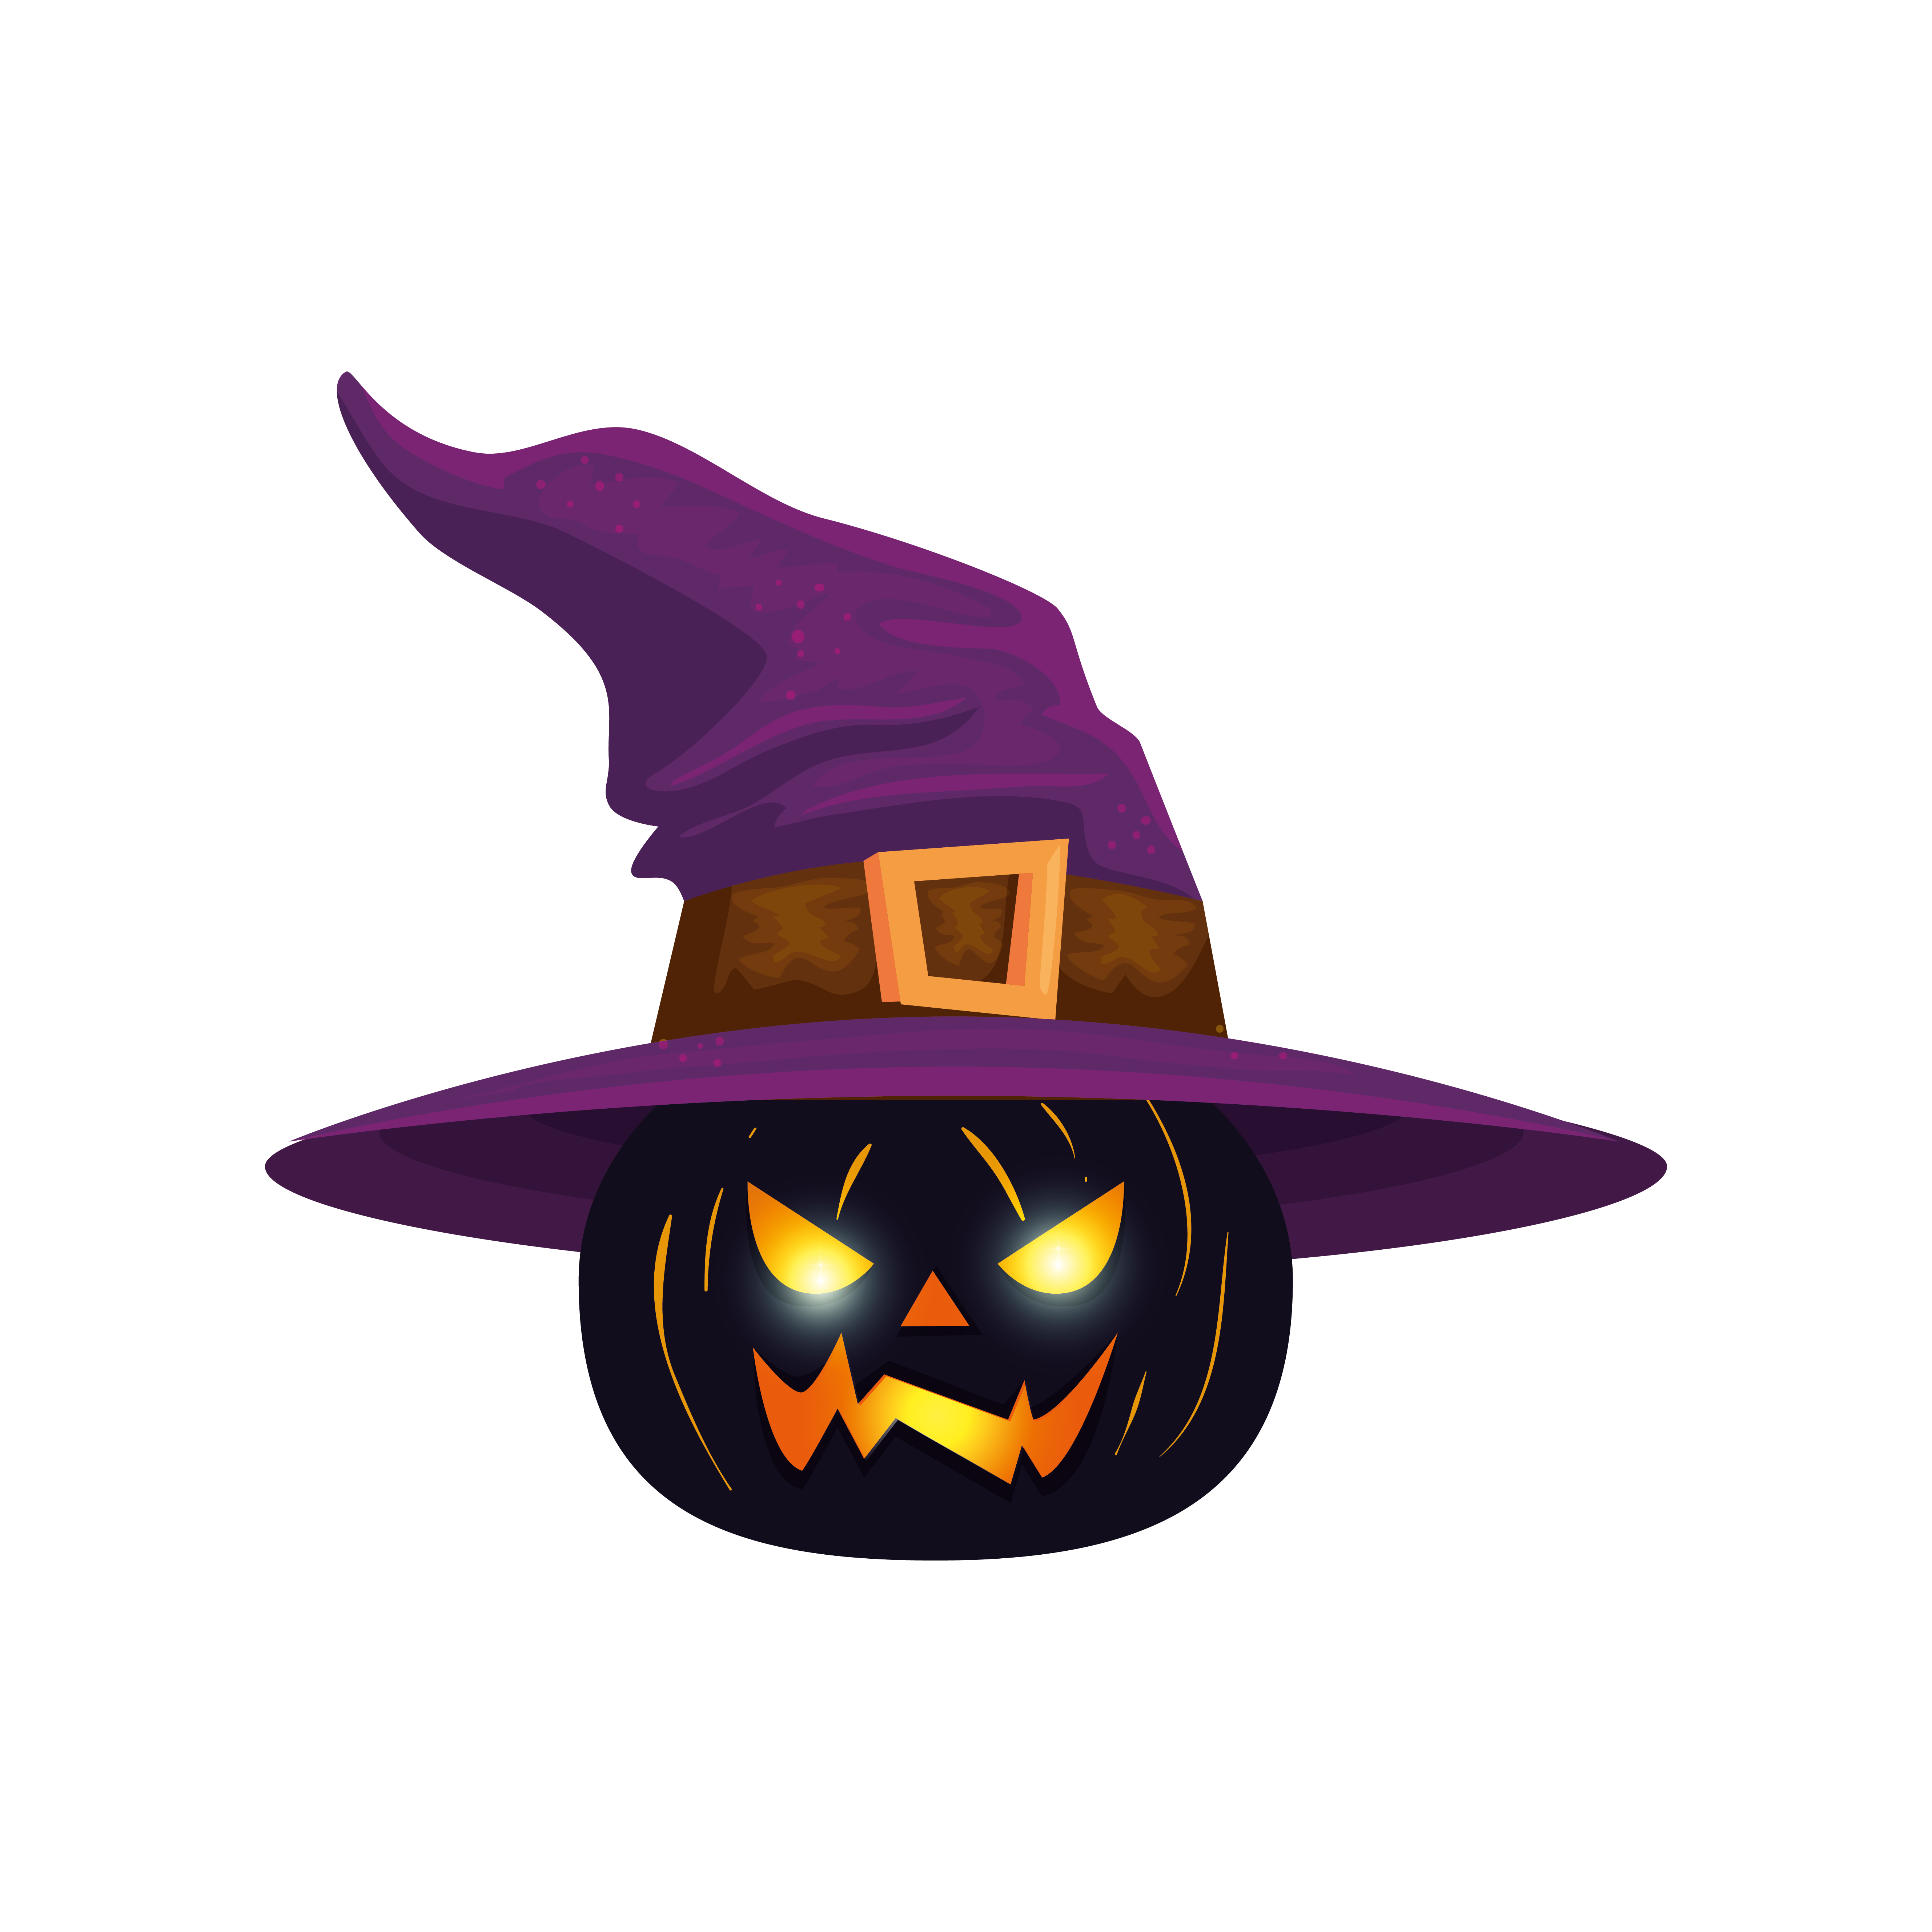 halloween pumpkin with witch hat 3179191 Vector Art at Vecteezy